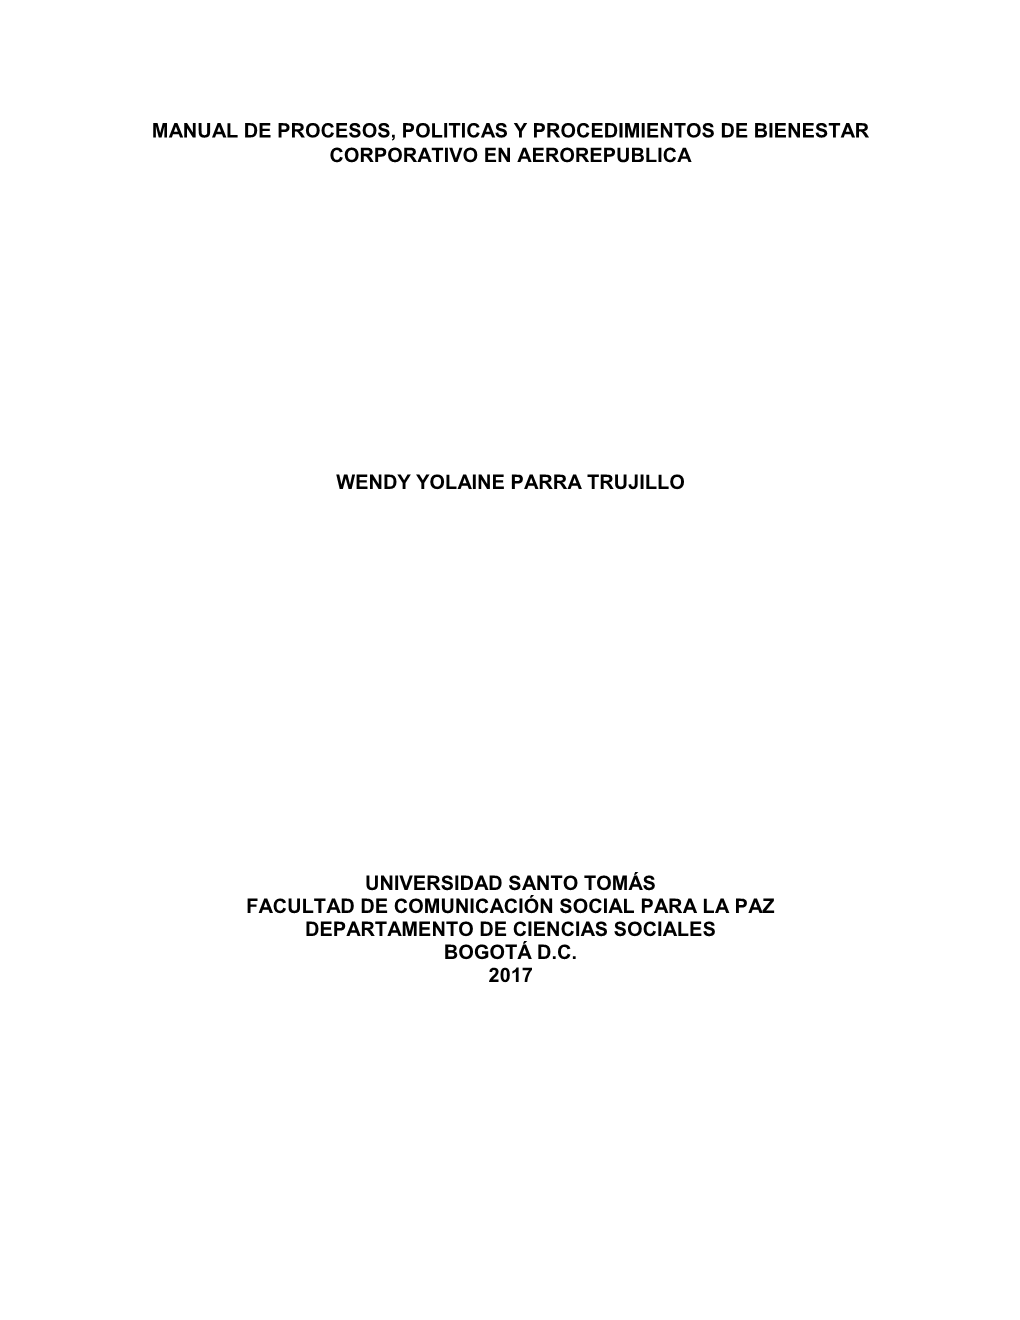 Manual De Procesos, Politicas Y Procedimientos De Bienestar Corporativo En Aerorepublica